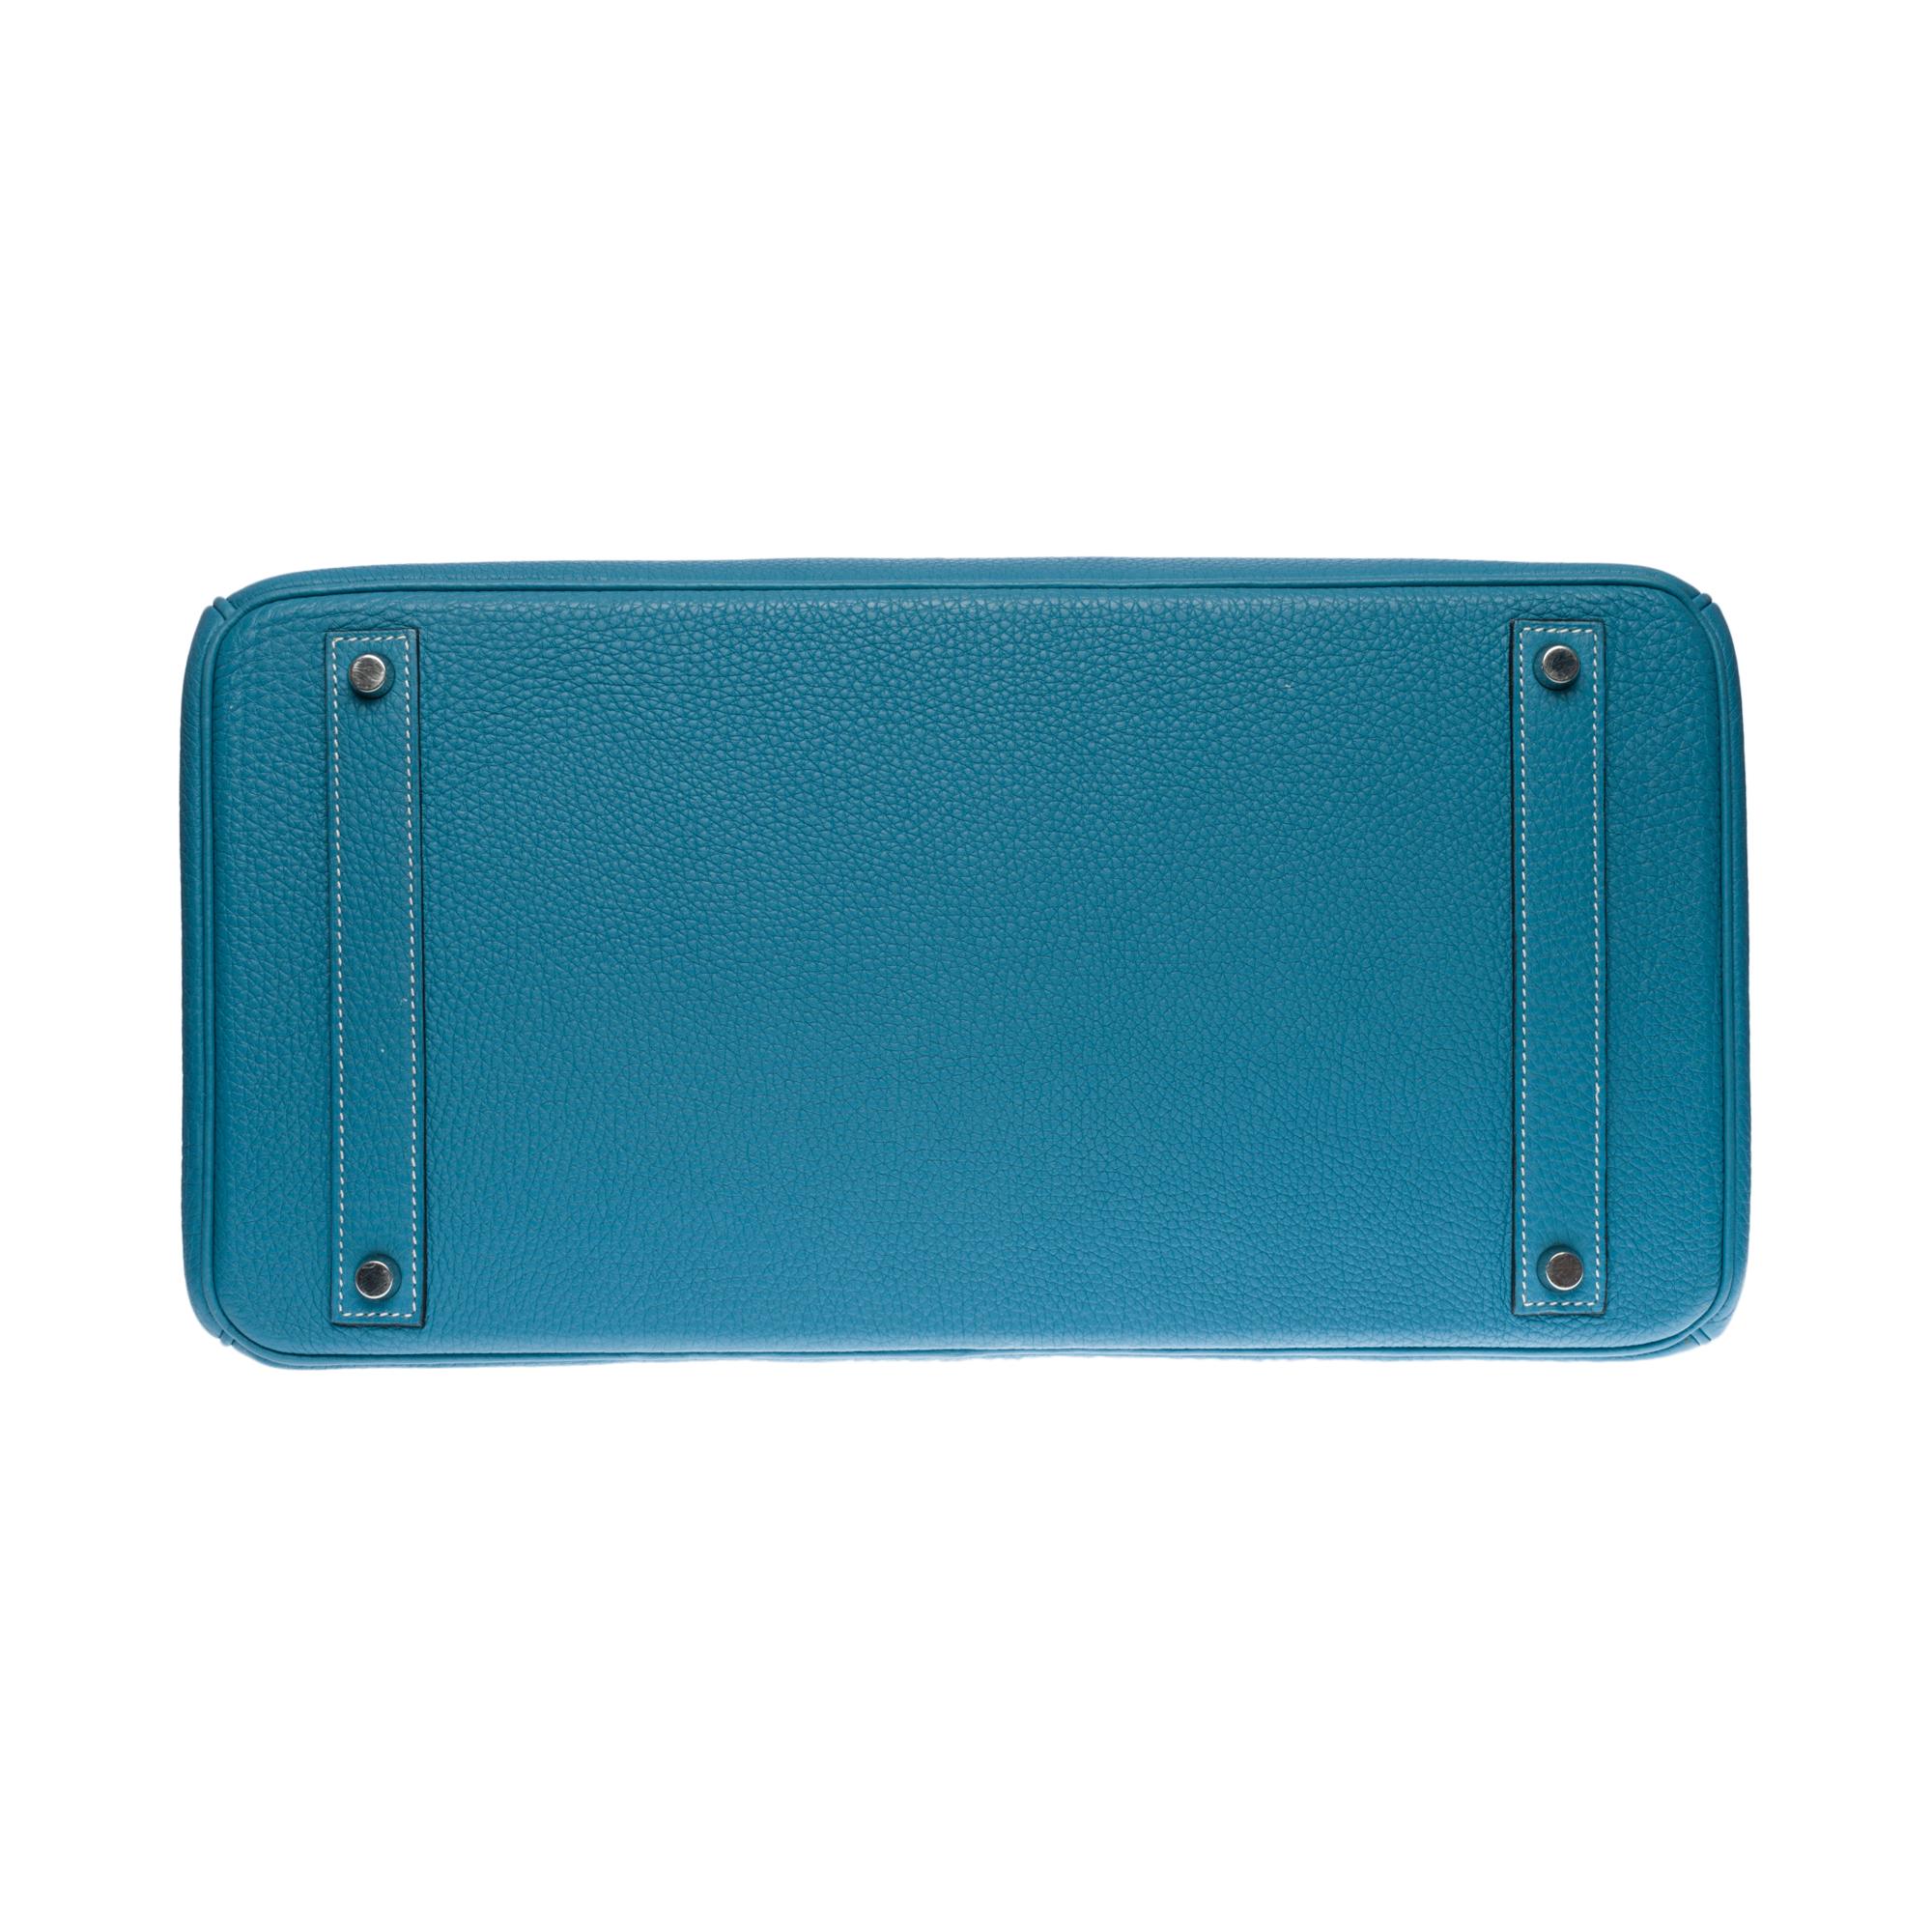 Stunning Hermes Birkin 40cm handbag in Blue Pétrole Togo leather, SHW 5